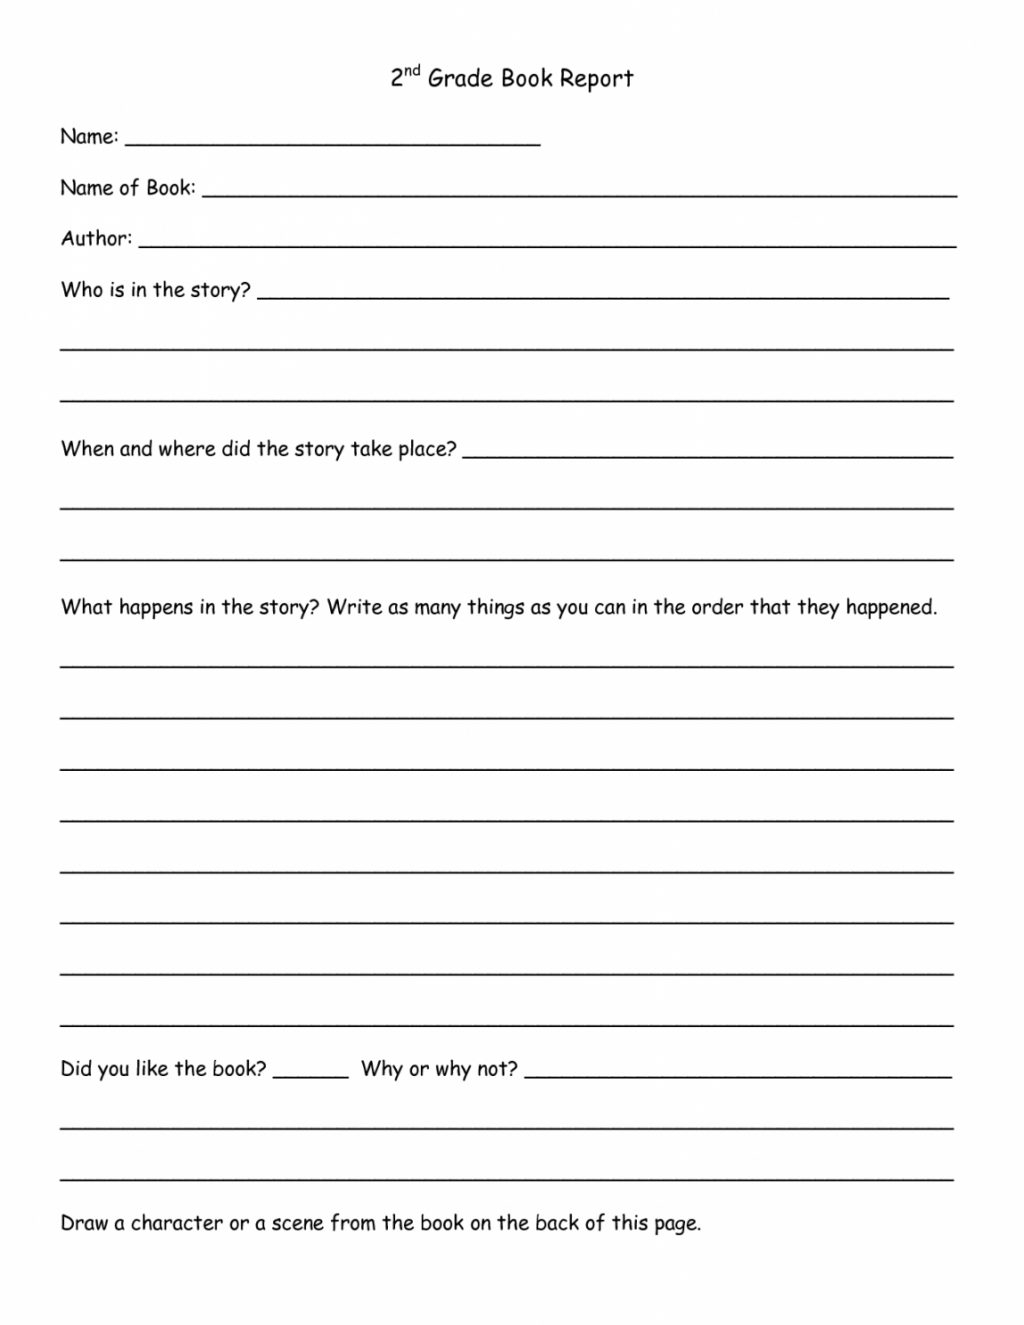 Worksheet Ideas ~ Book Report Template 1St Grade Kola With 1St Grade Book Report Template